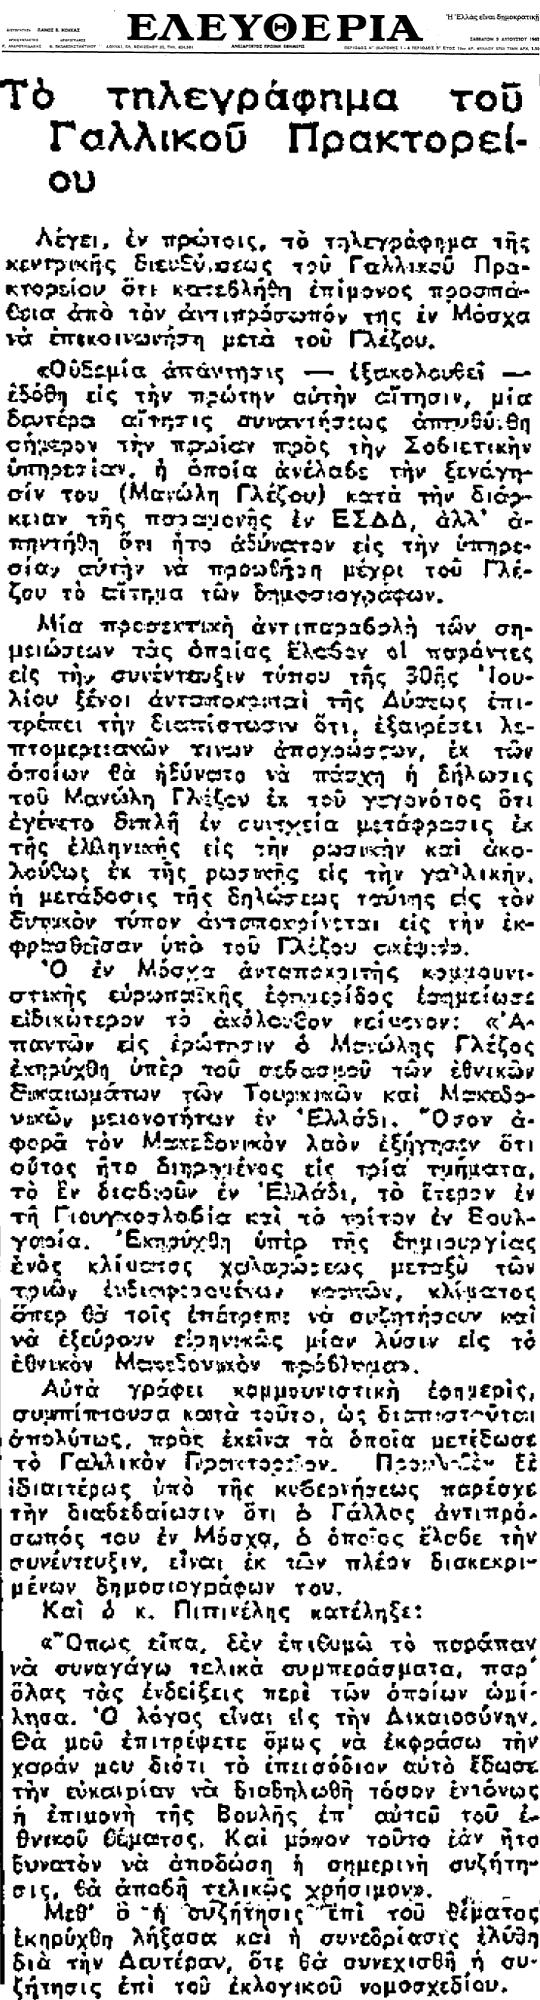 Εφημερίδα «Ελευθερία» (3-8-1963) - Δηλώσεις Μανώλη Γλέζου για Μακεδονία